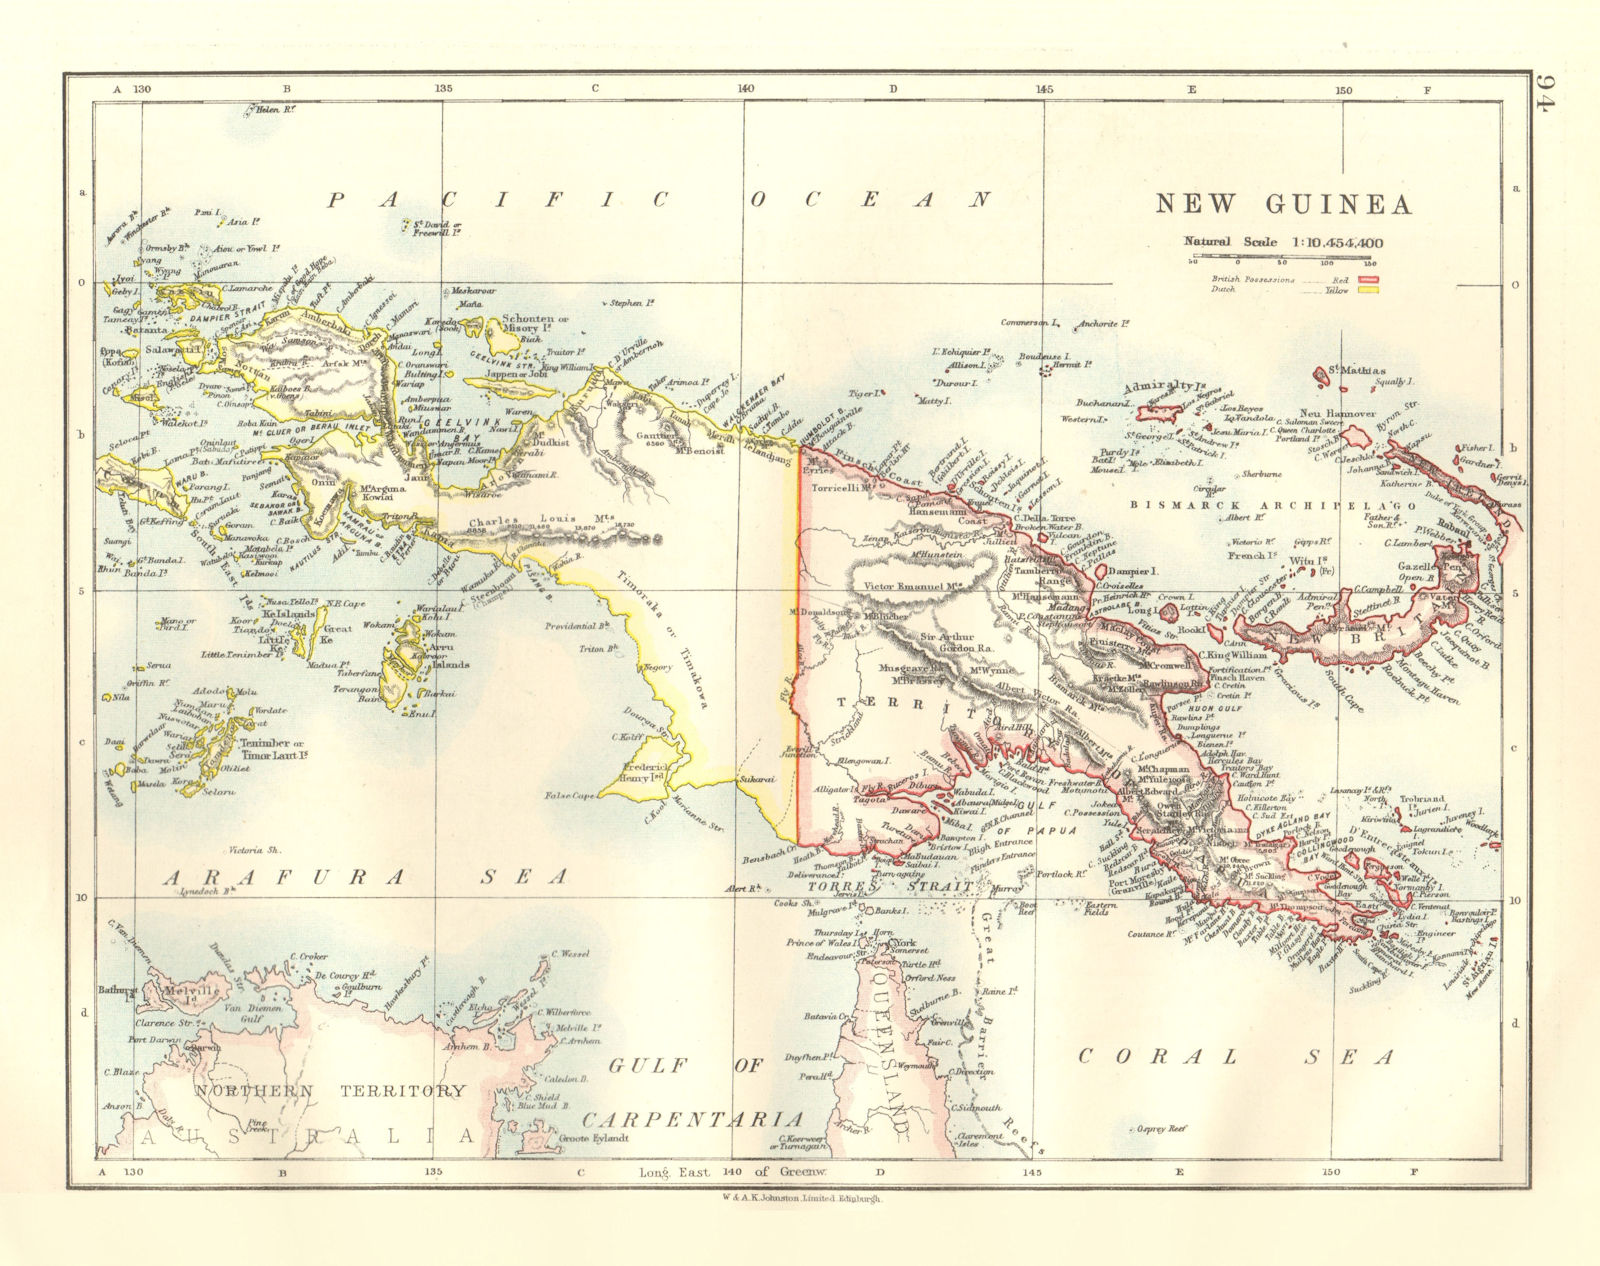 COLONIAL NEW GUINEA. British & Dutch New Guinea. Bismarck Archipelago 1920 map